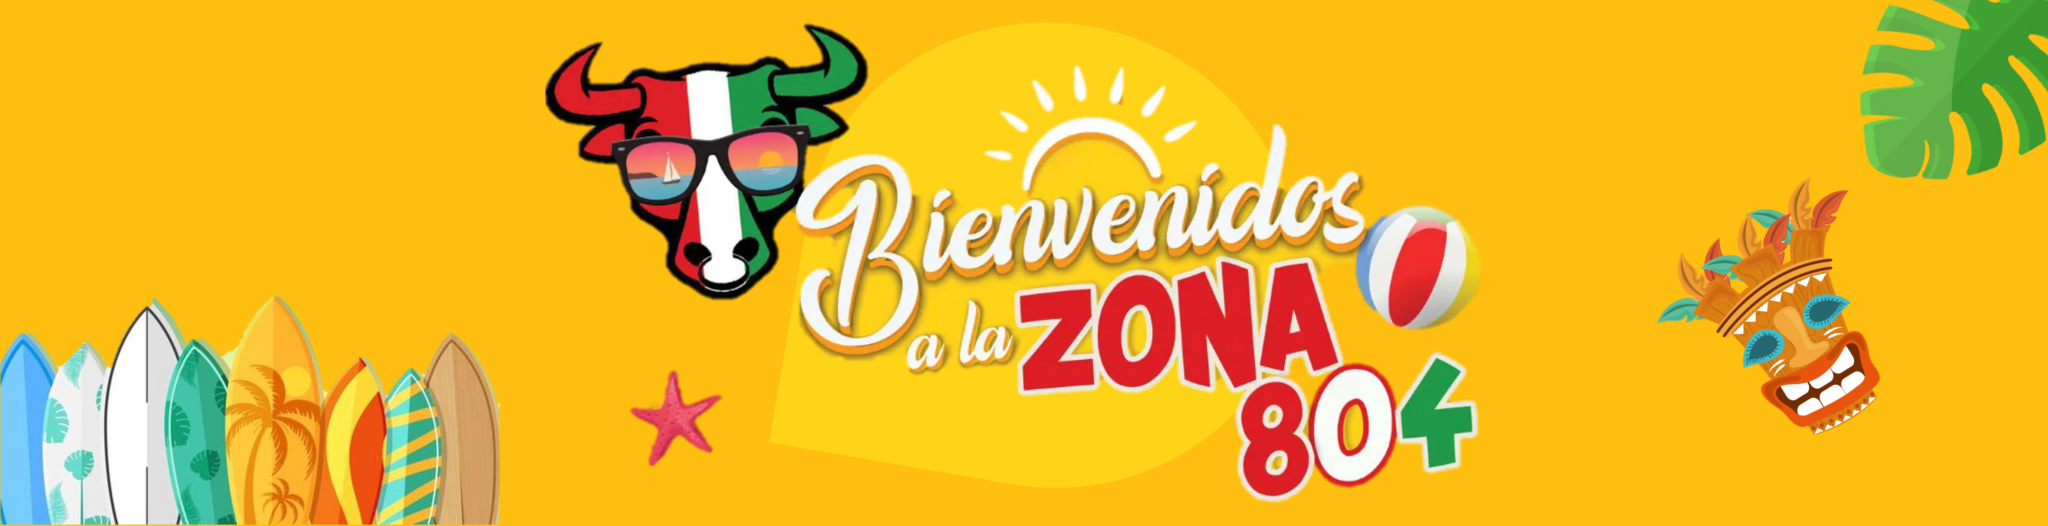 Imagen banner Bienvenida Zona 804